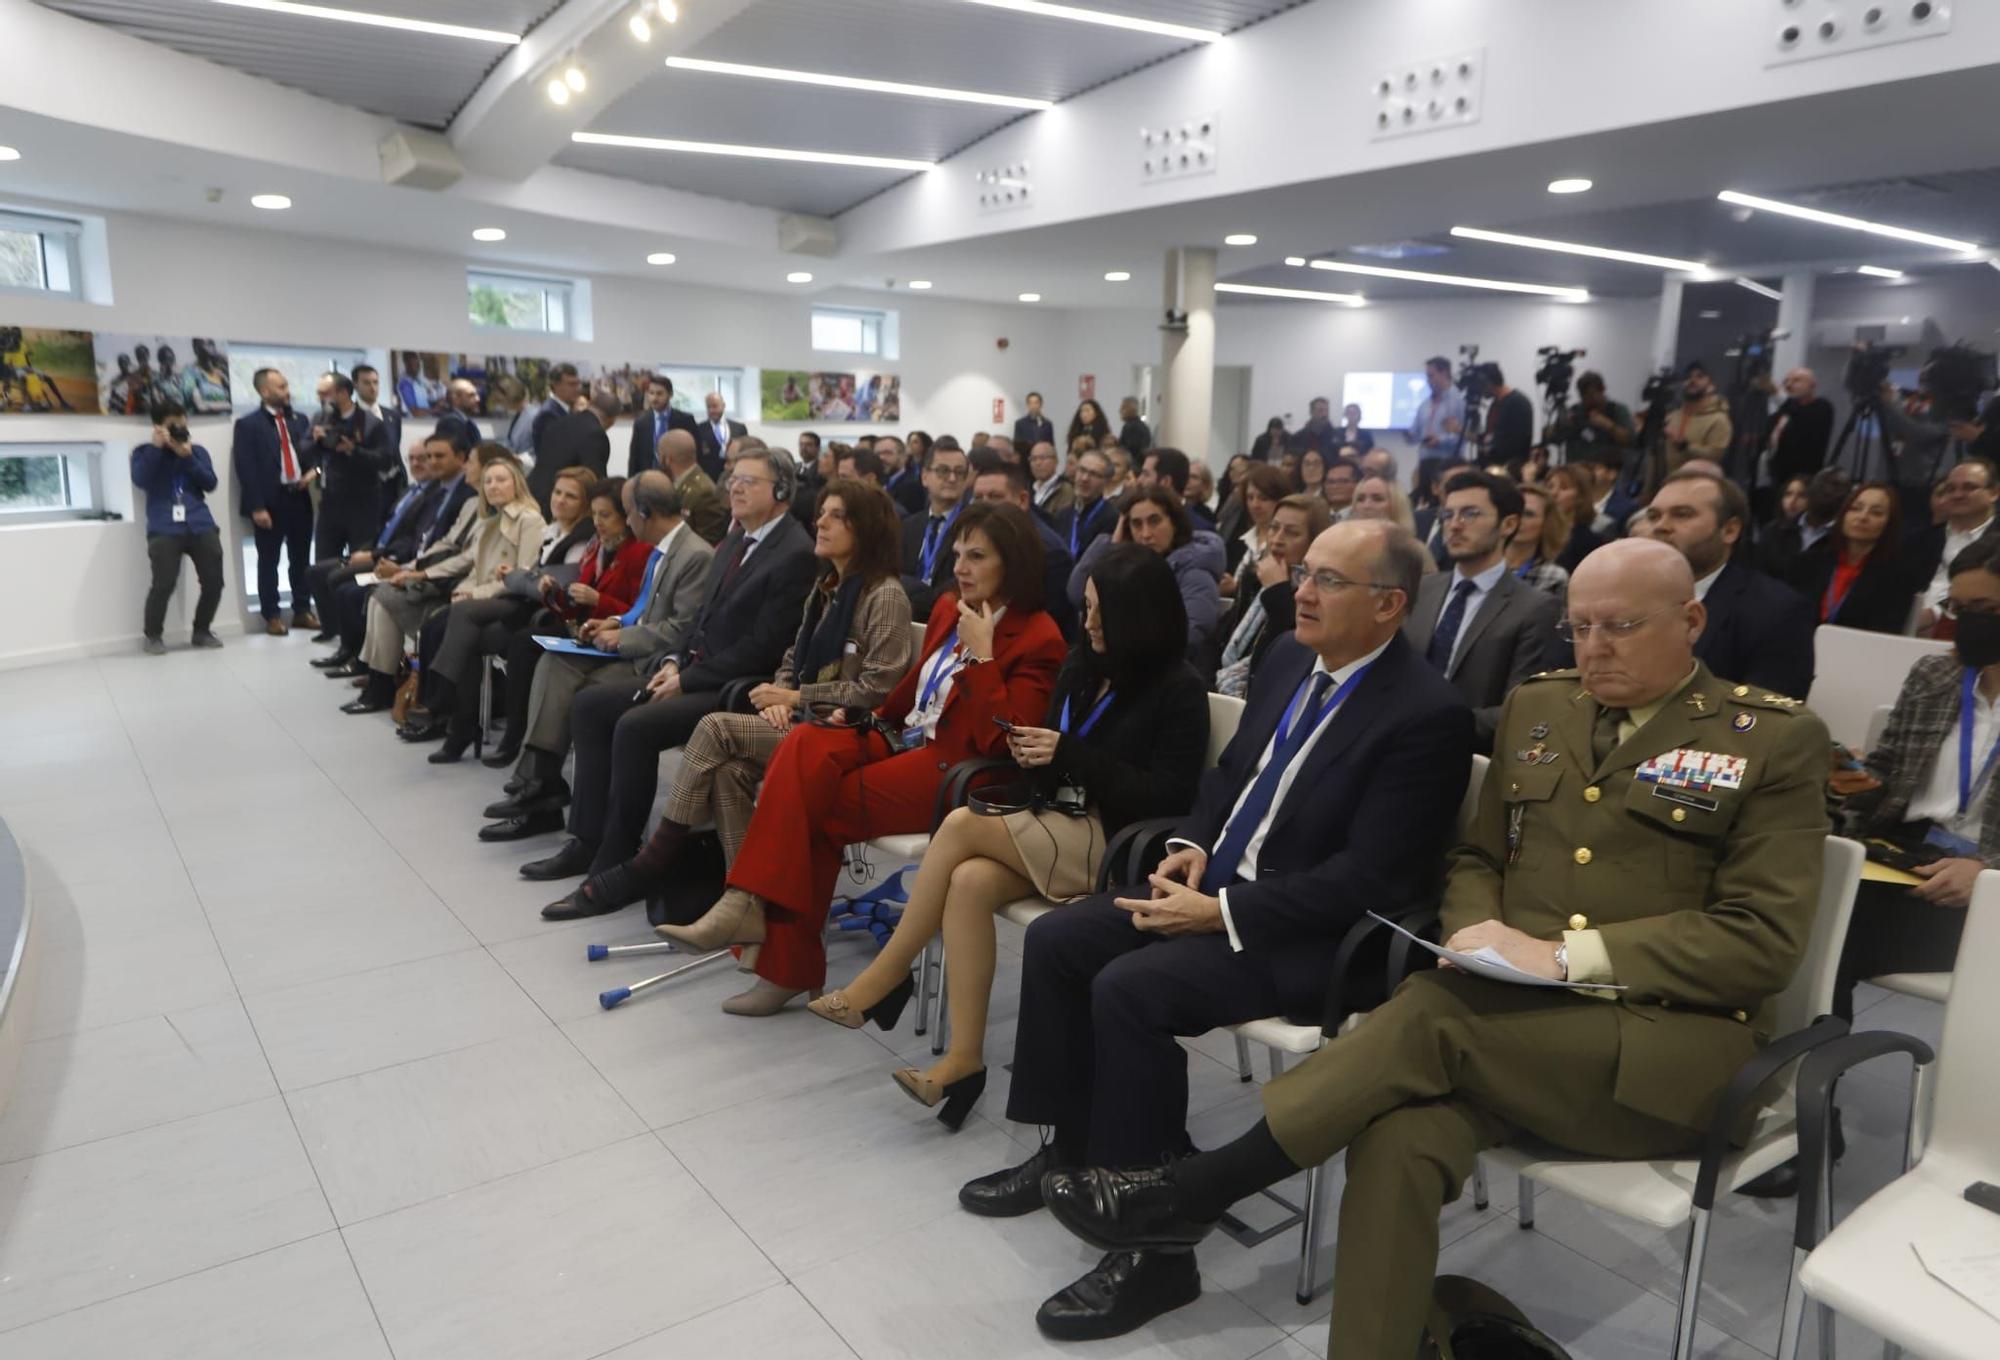 La ONU inaugura su nuevo edificio en València